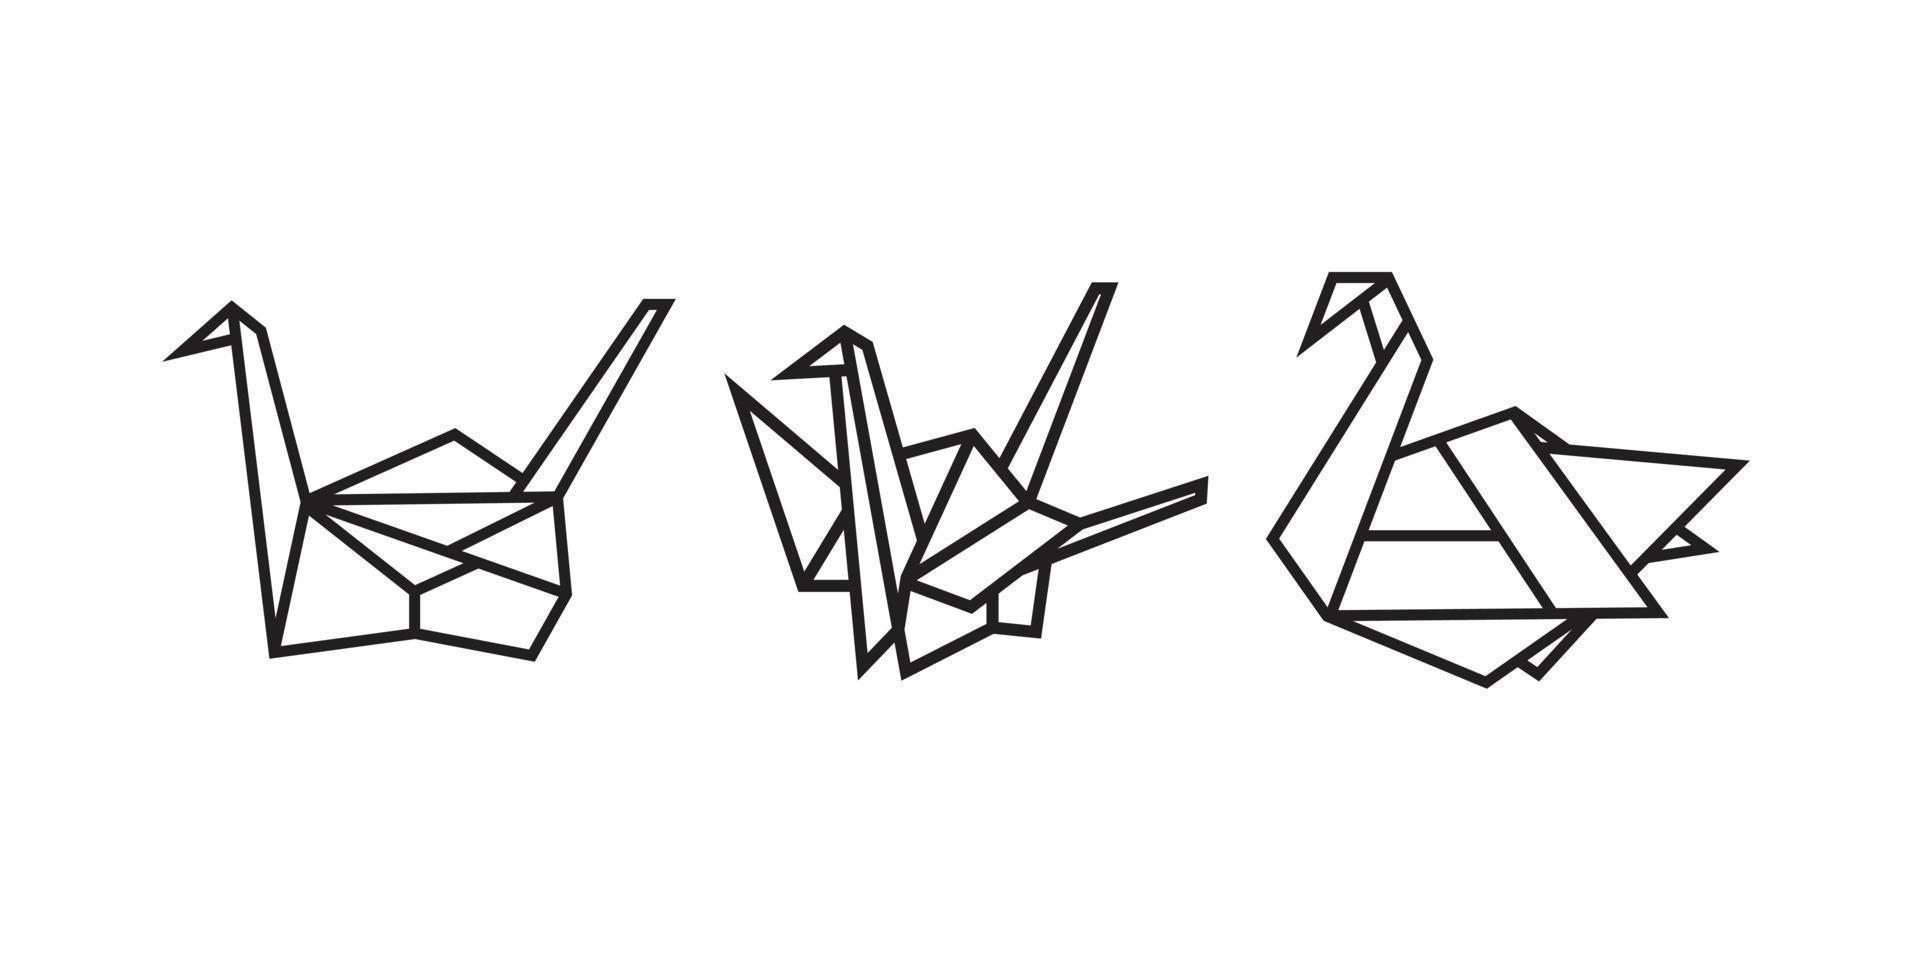 ilustraciones de aves en estilo origami vector